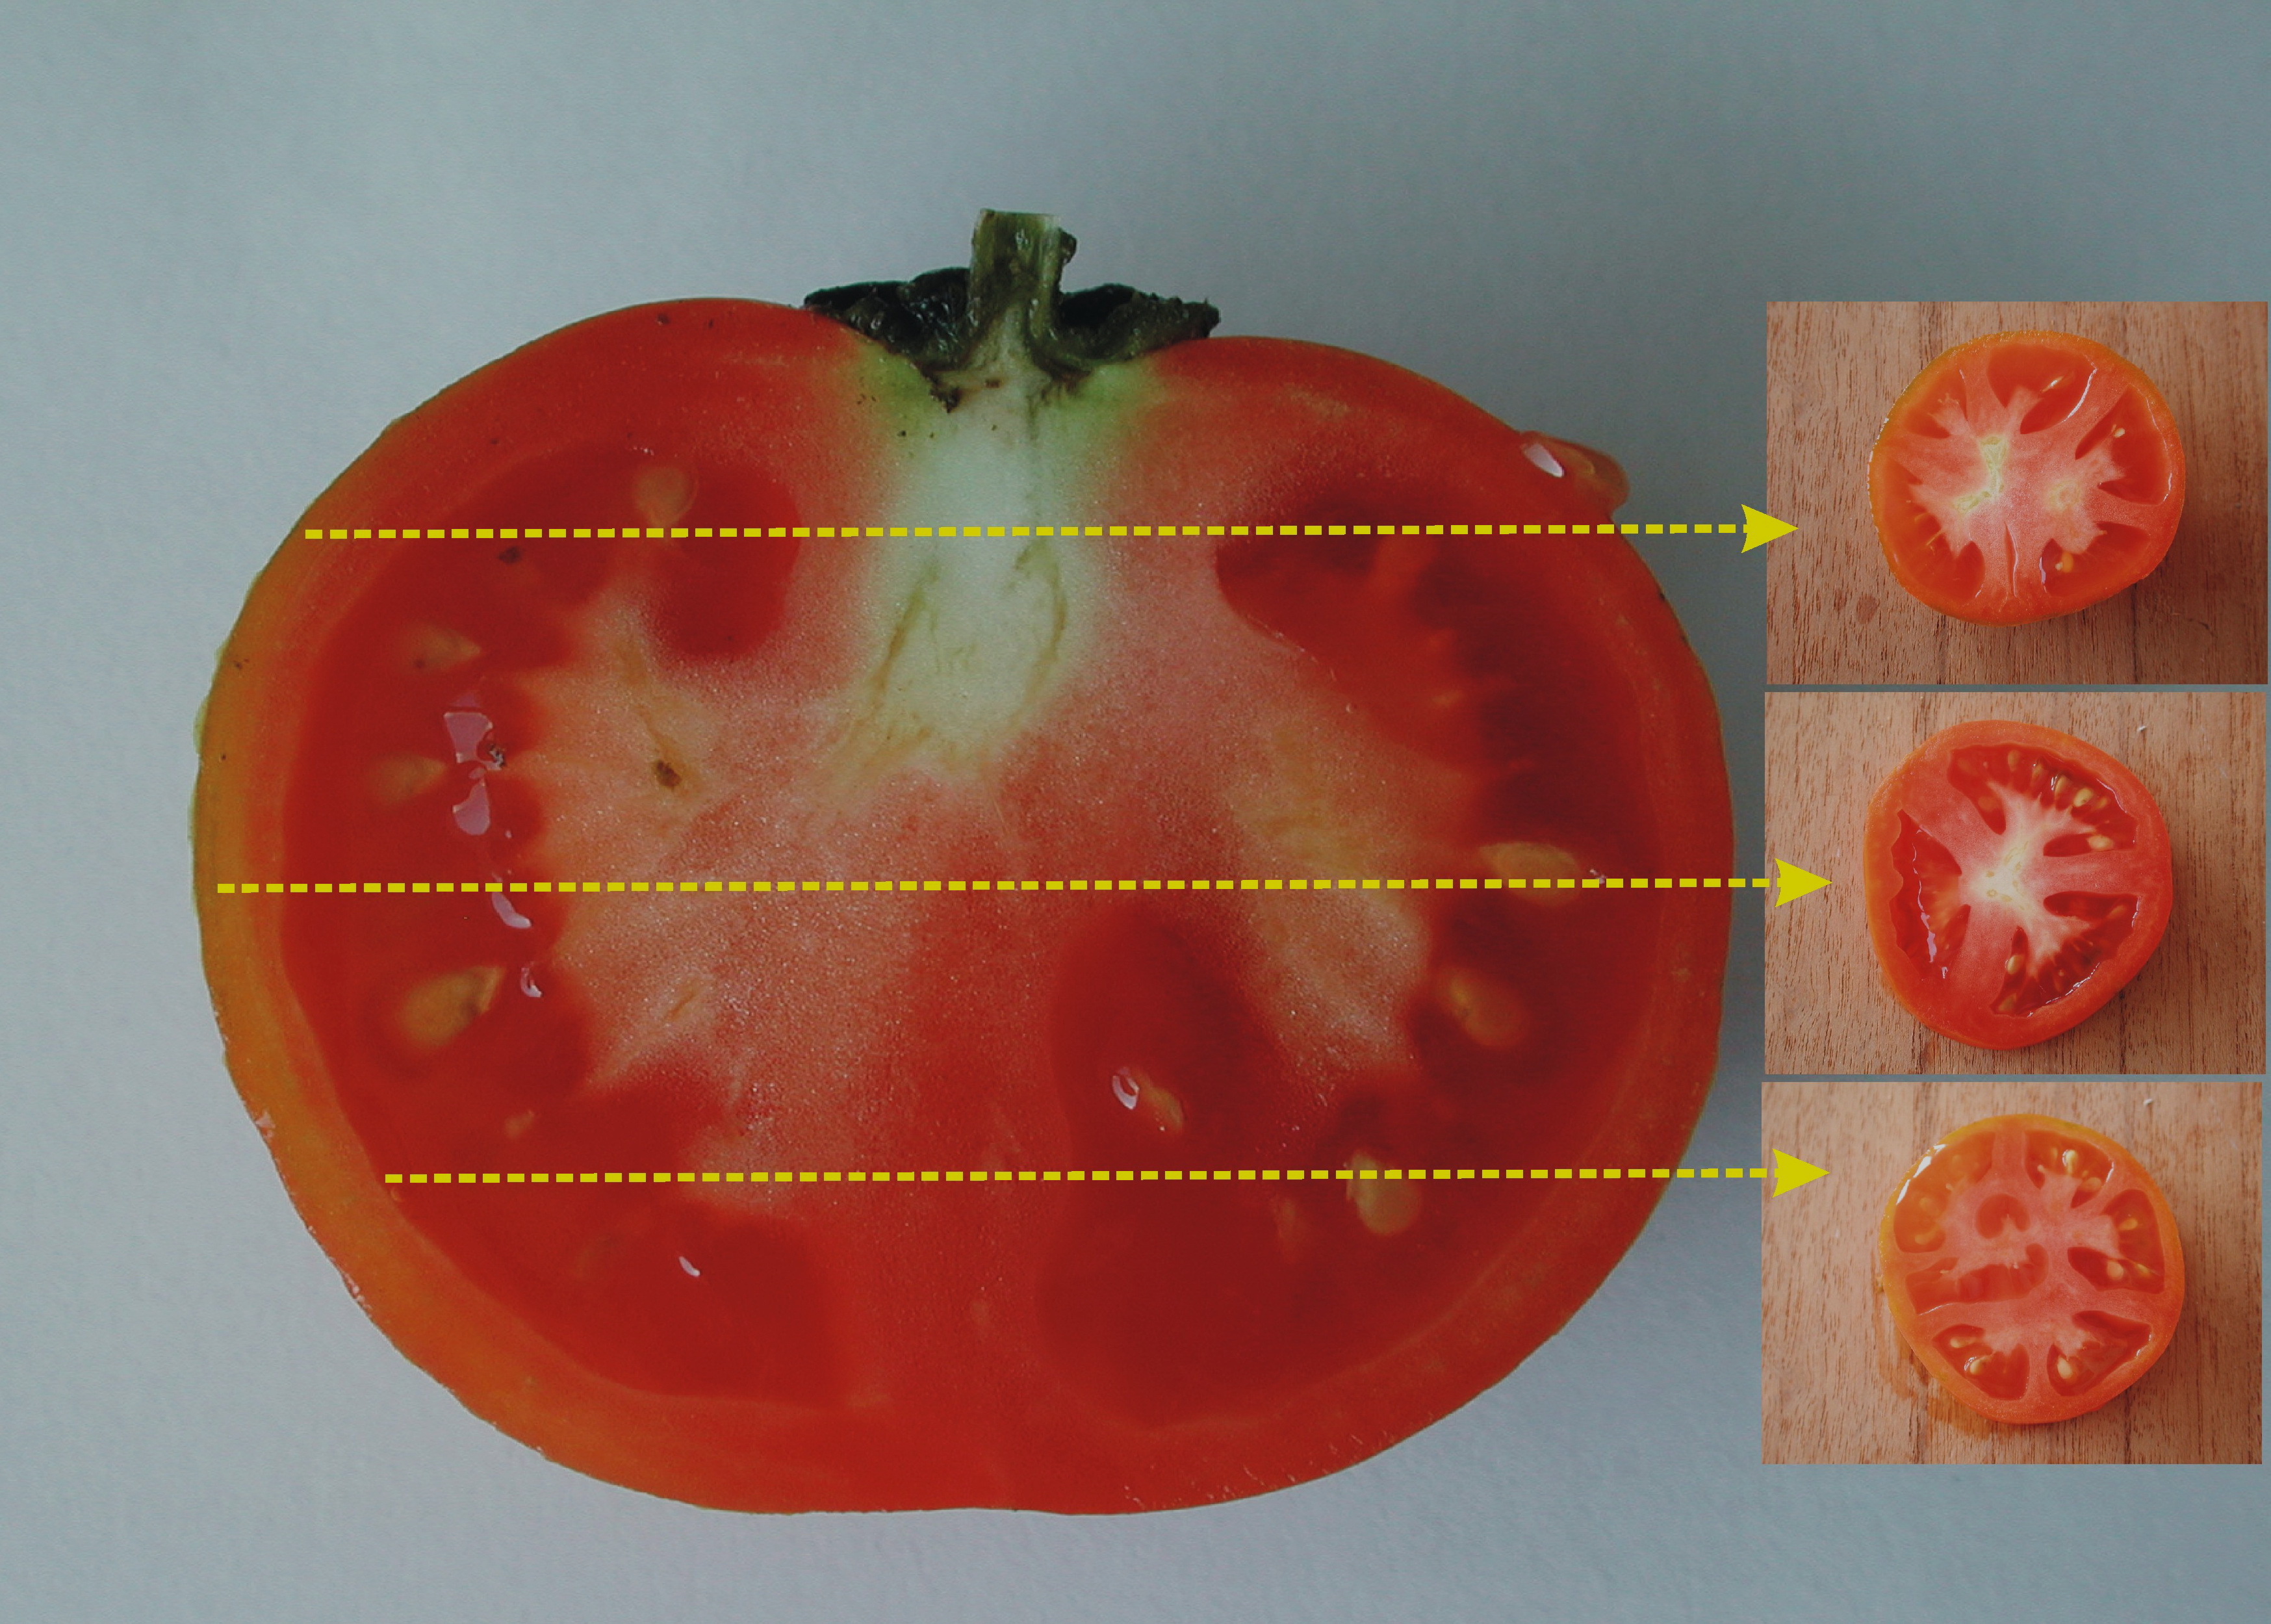 番茄果实横切面结构图图片